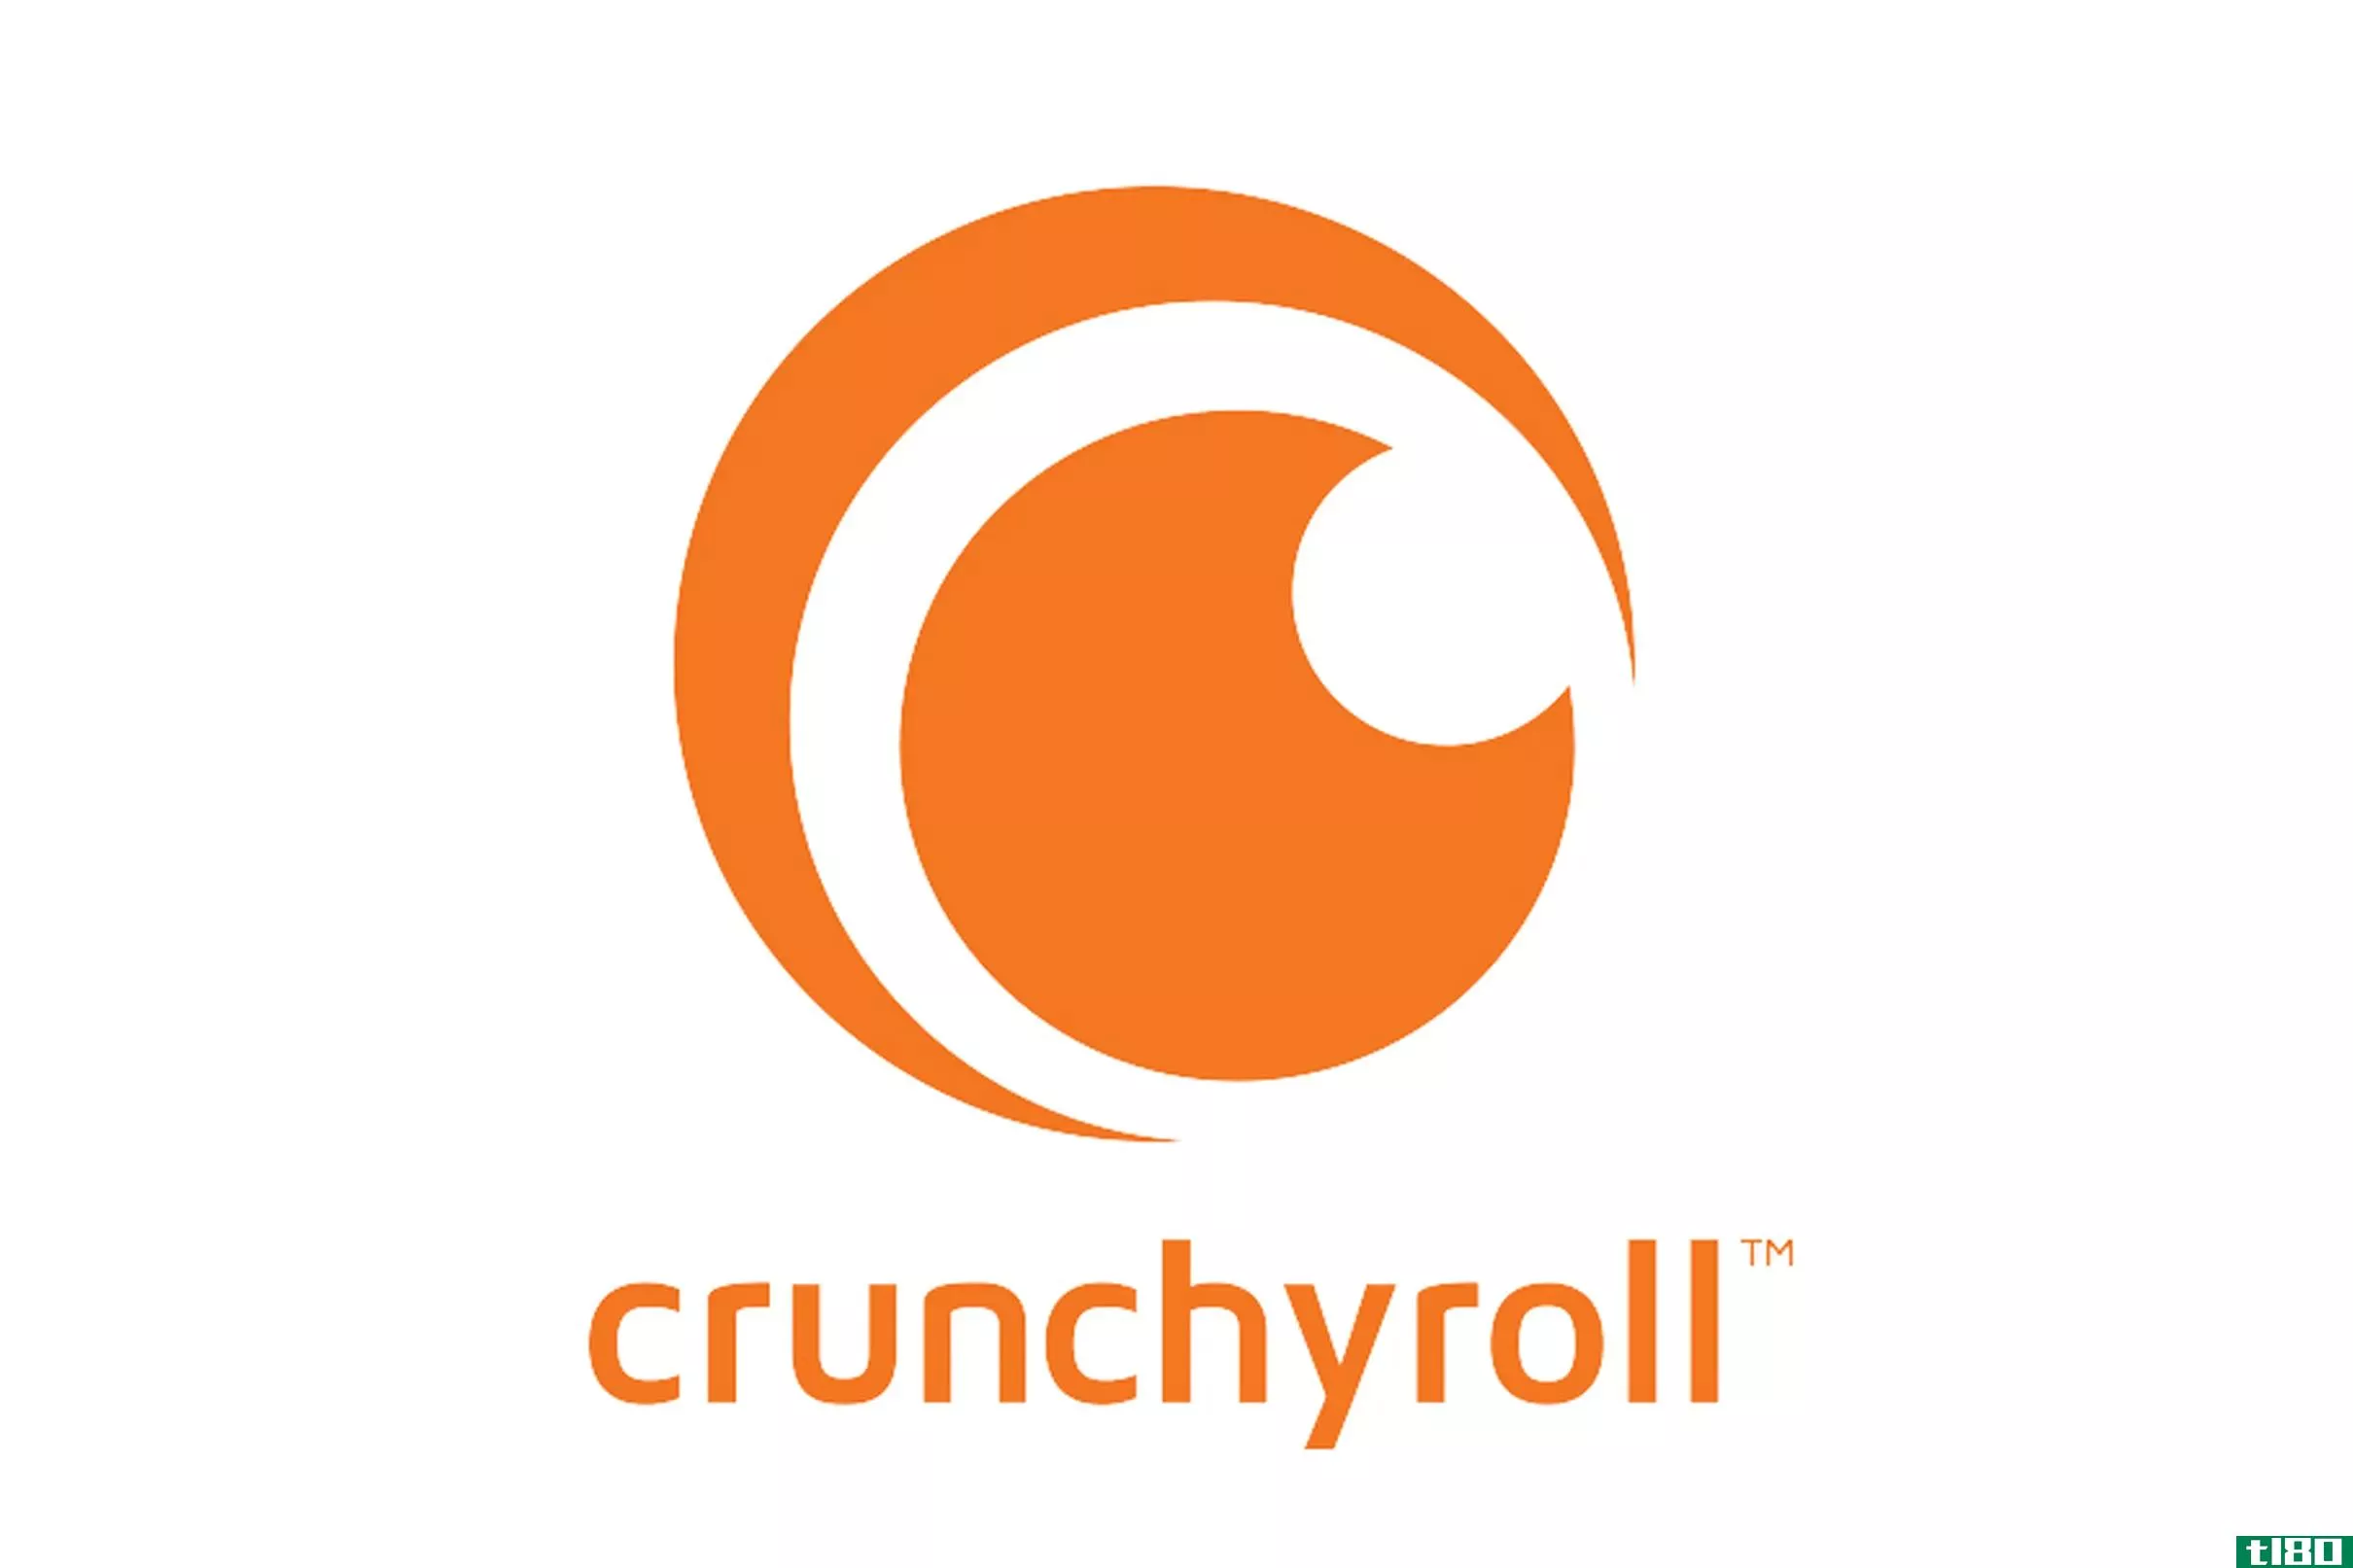 索尼将以11.75亿美元从at&t收购动漫流媒体服务crunchyroll